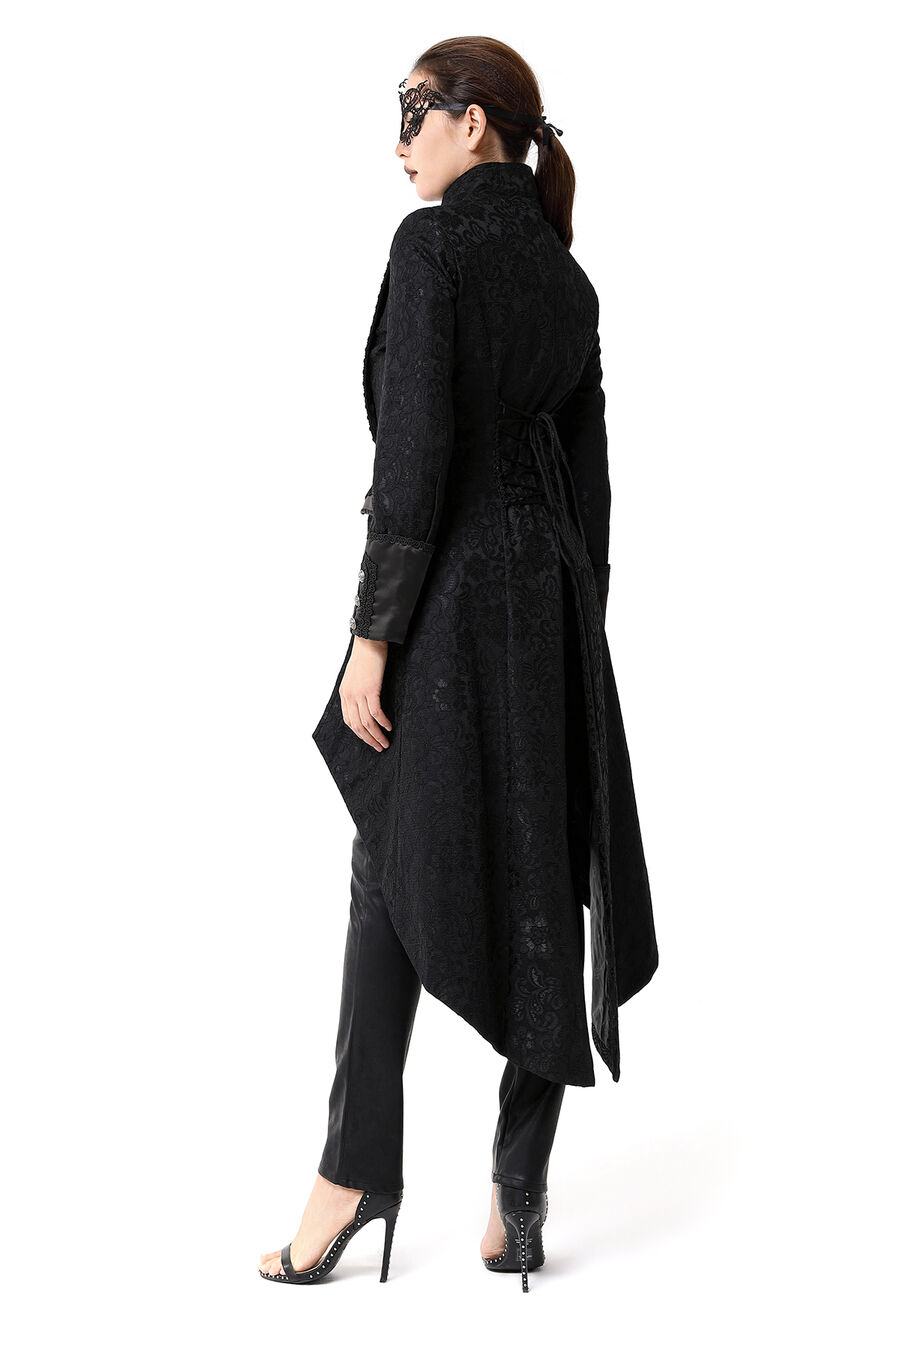 photo n°12 : Manteau long gothique en dentelle femme